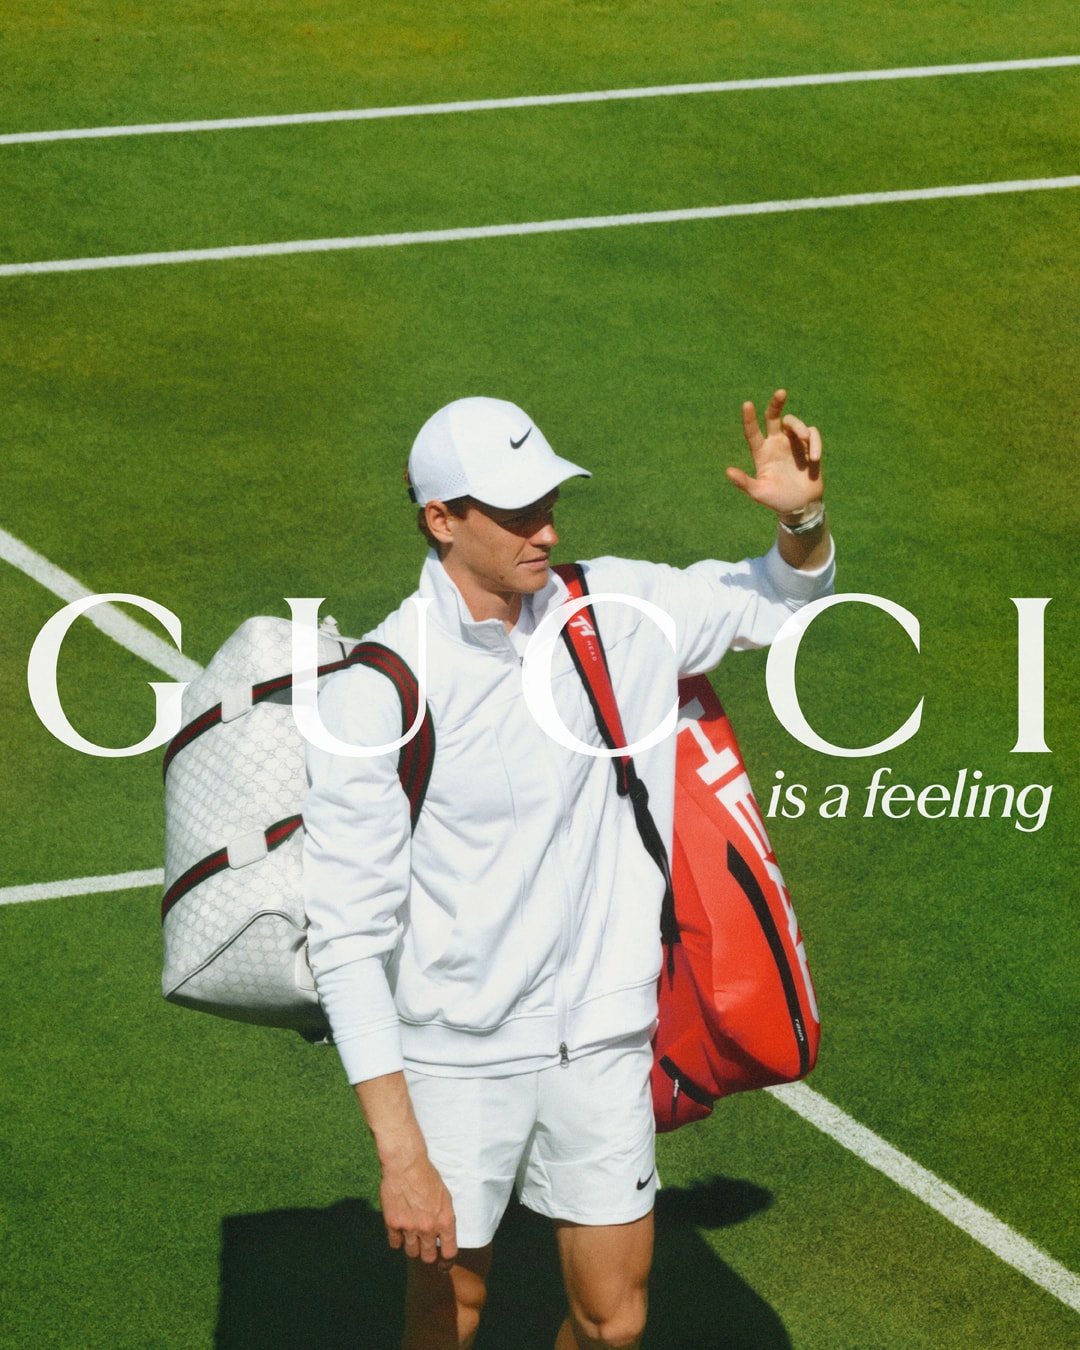 職業網球選手 Jannik Sinner 演繹 Gucci 全新形象廣告